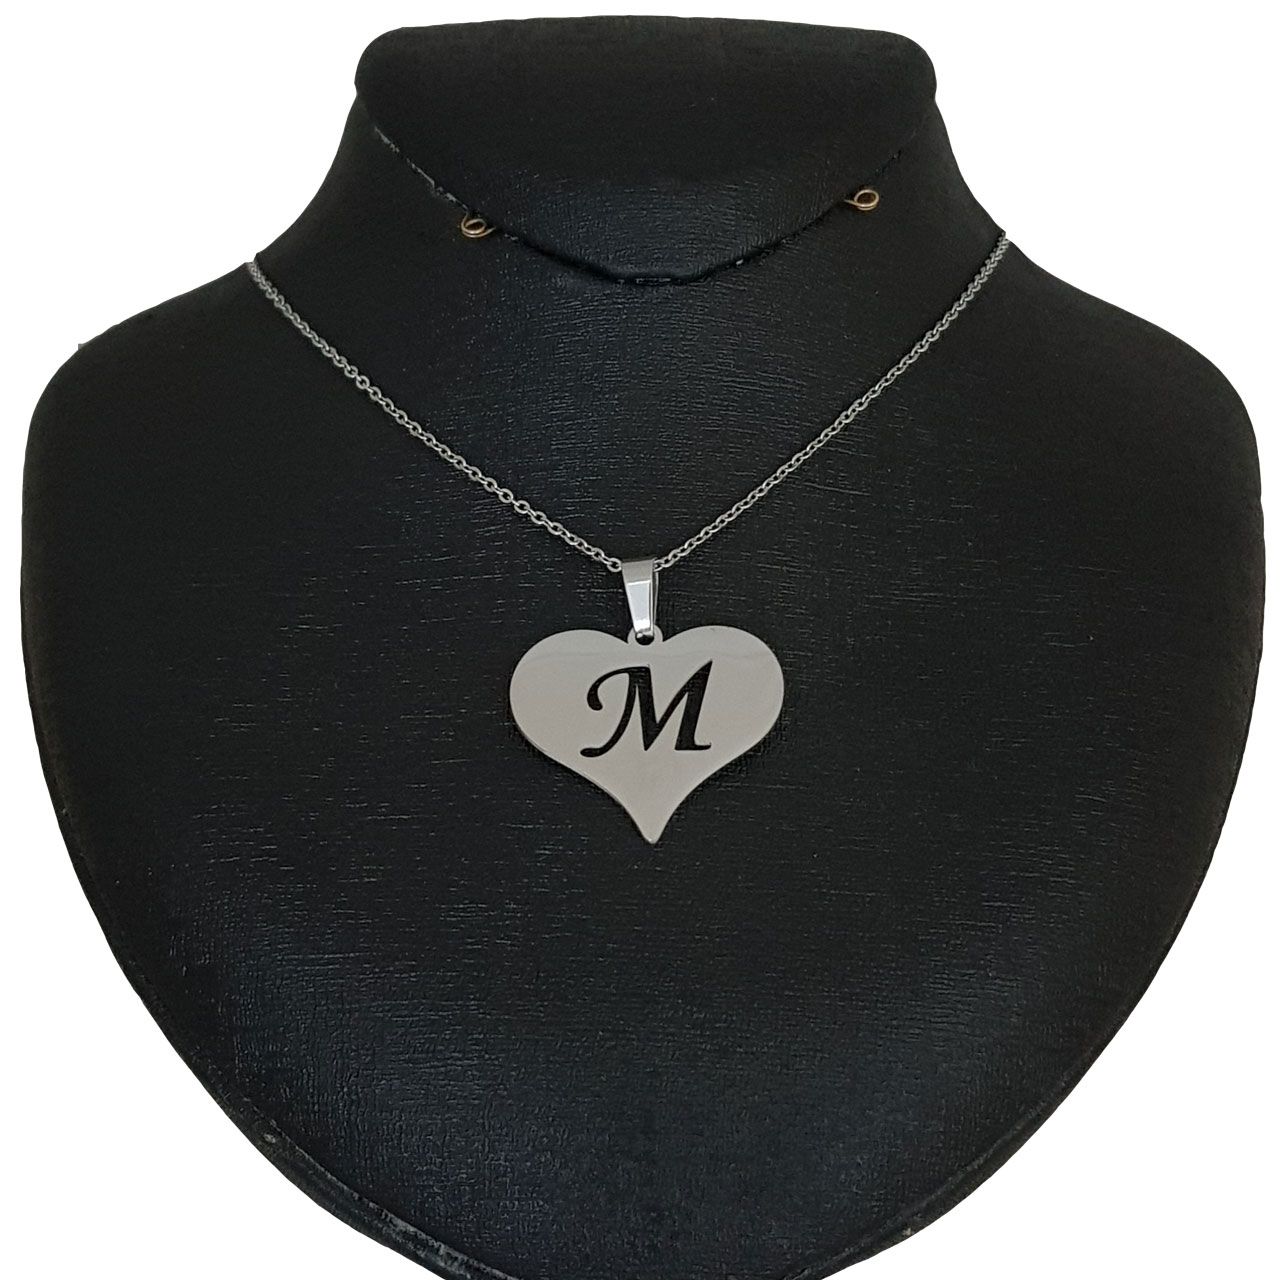 گردنبند زنانه طرح قلب حرف M کد e431 -  - 1